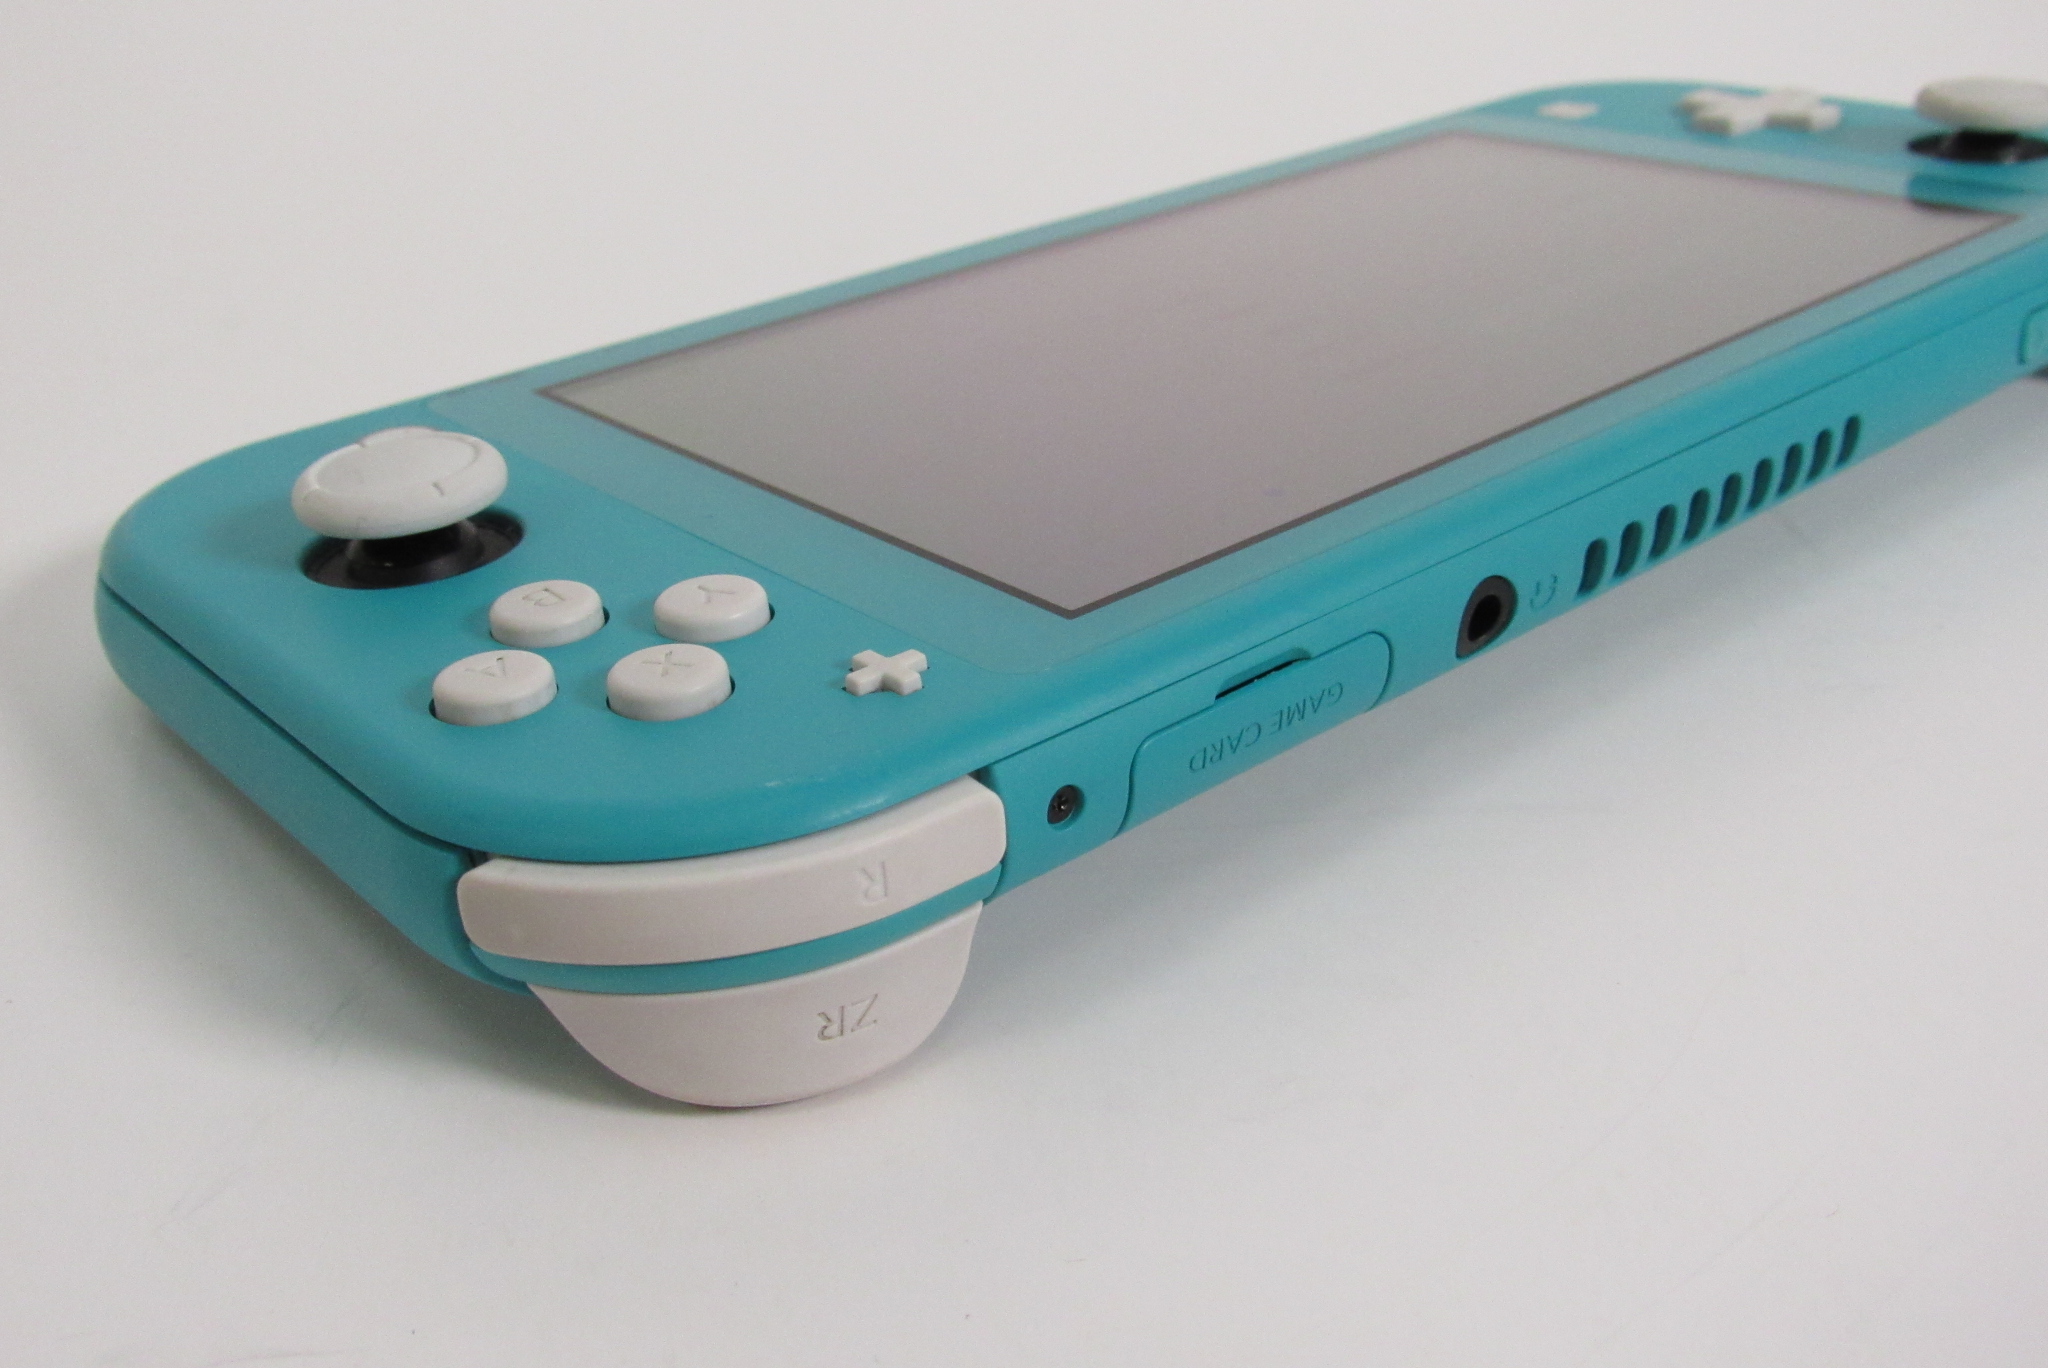 Console Videogame Nintendo Switch Lite 32gb Colorido Portátil Barato  Lacrado Nacional Homologado Anatel Nota Fiscal Garantia 12 Meses Novo Azul  Índigo